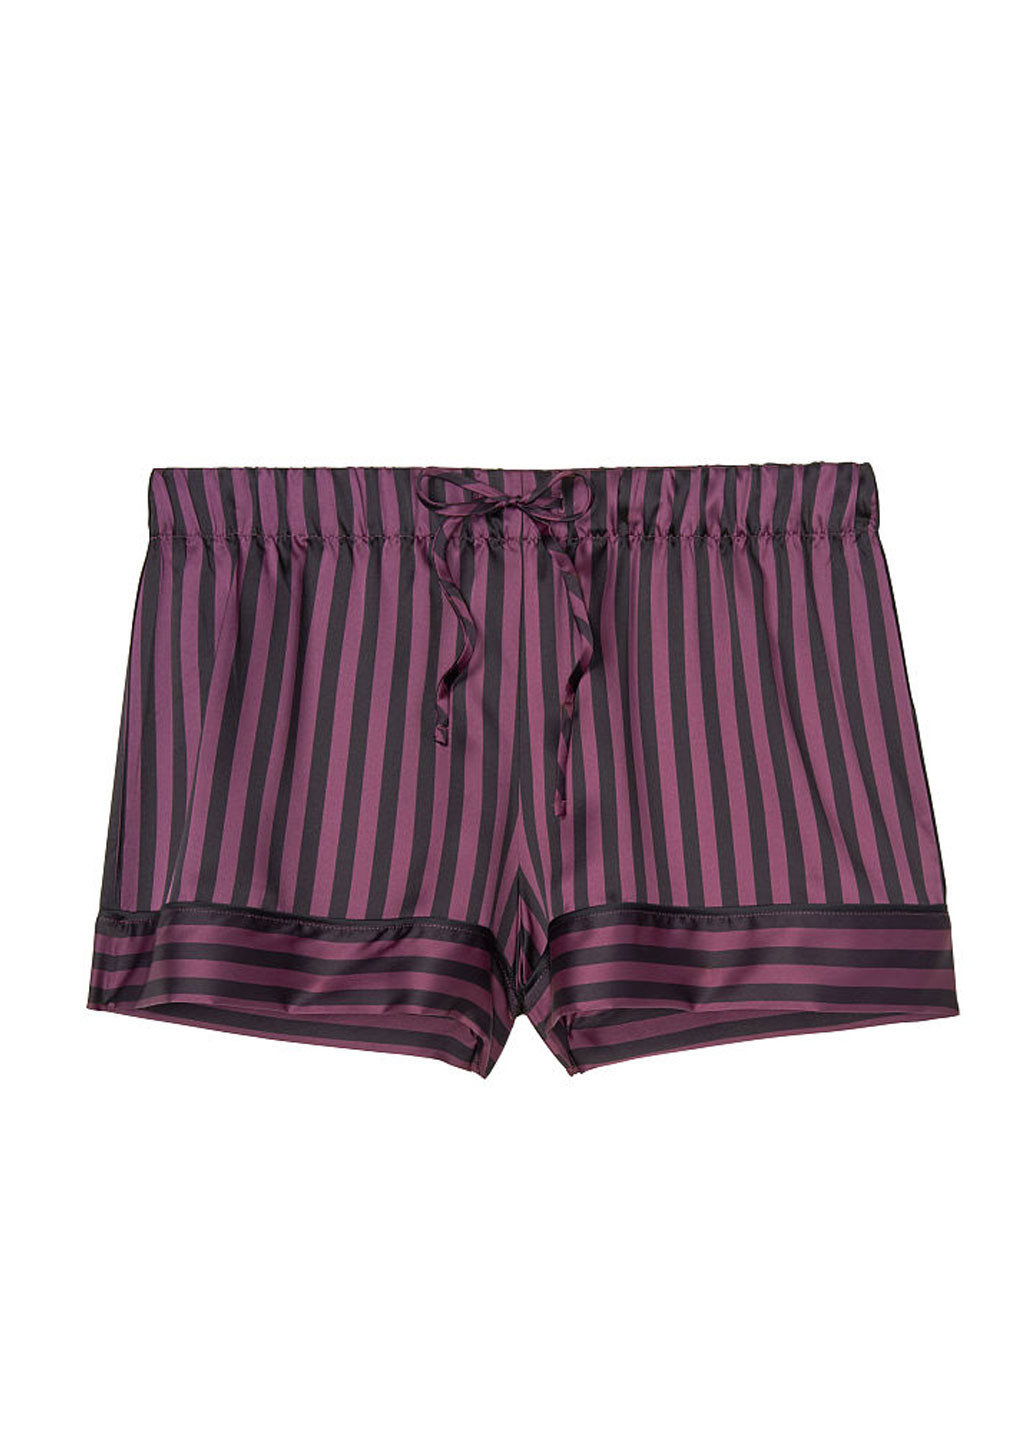 Фіолетова всесезон піжама (топ, шорти) топ + шорти Victoria's Secret